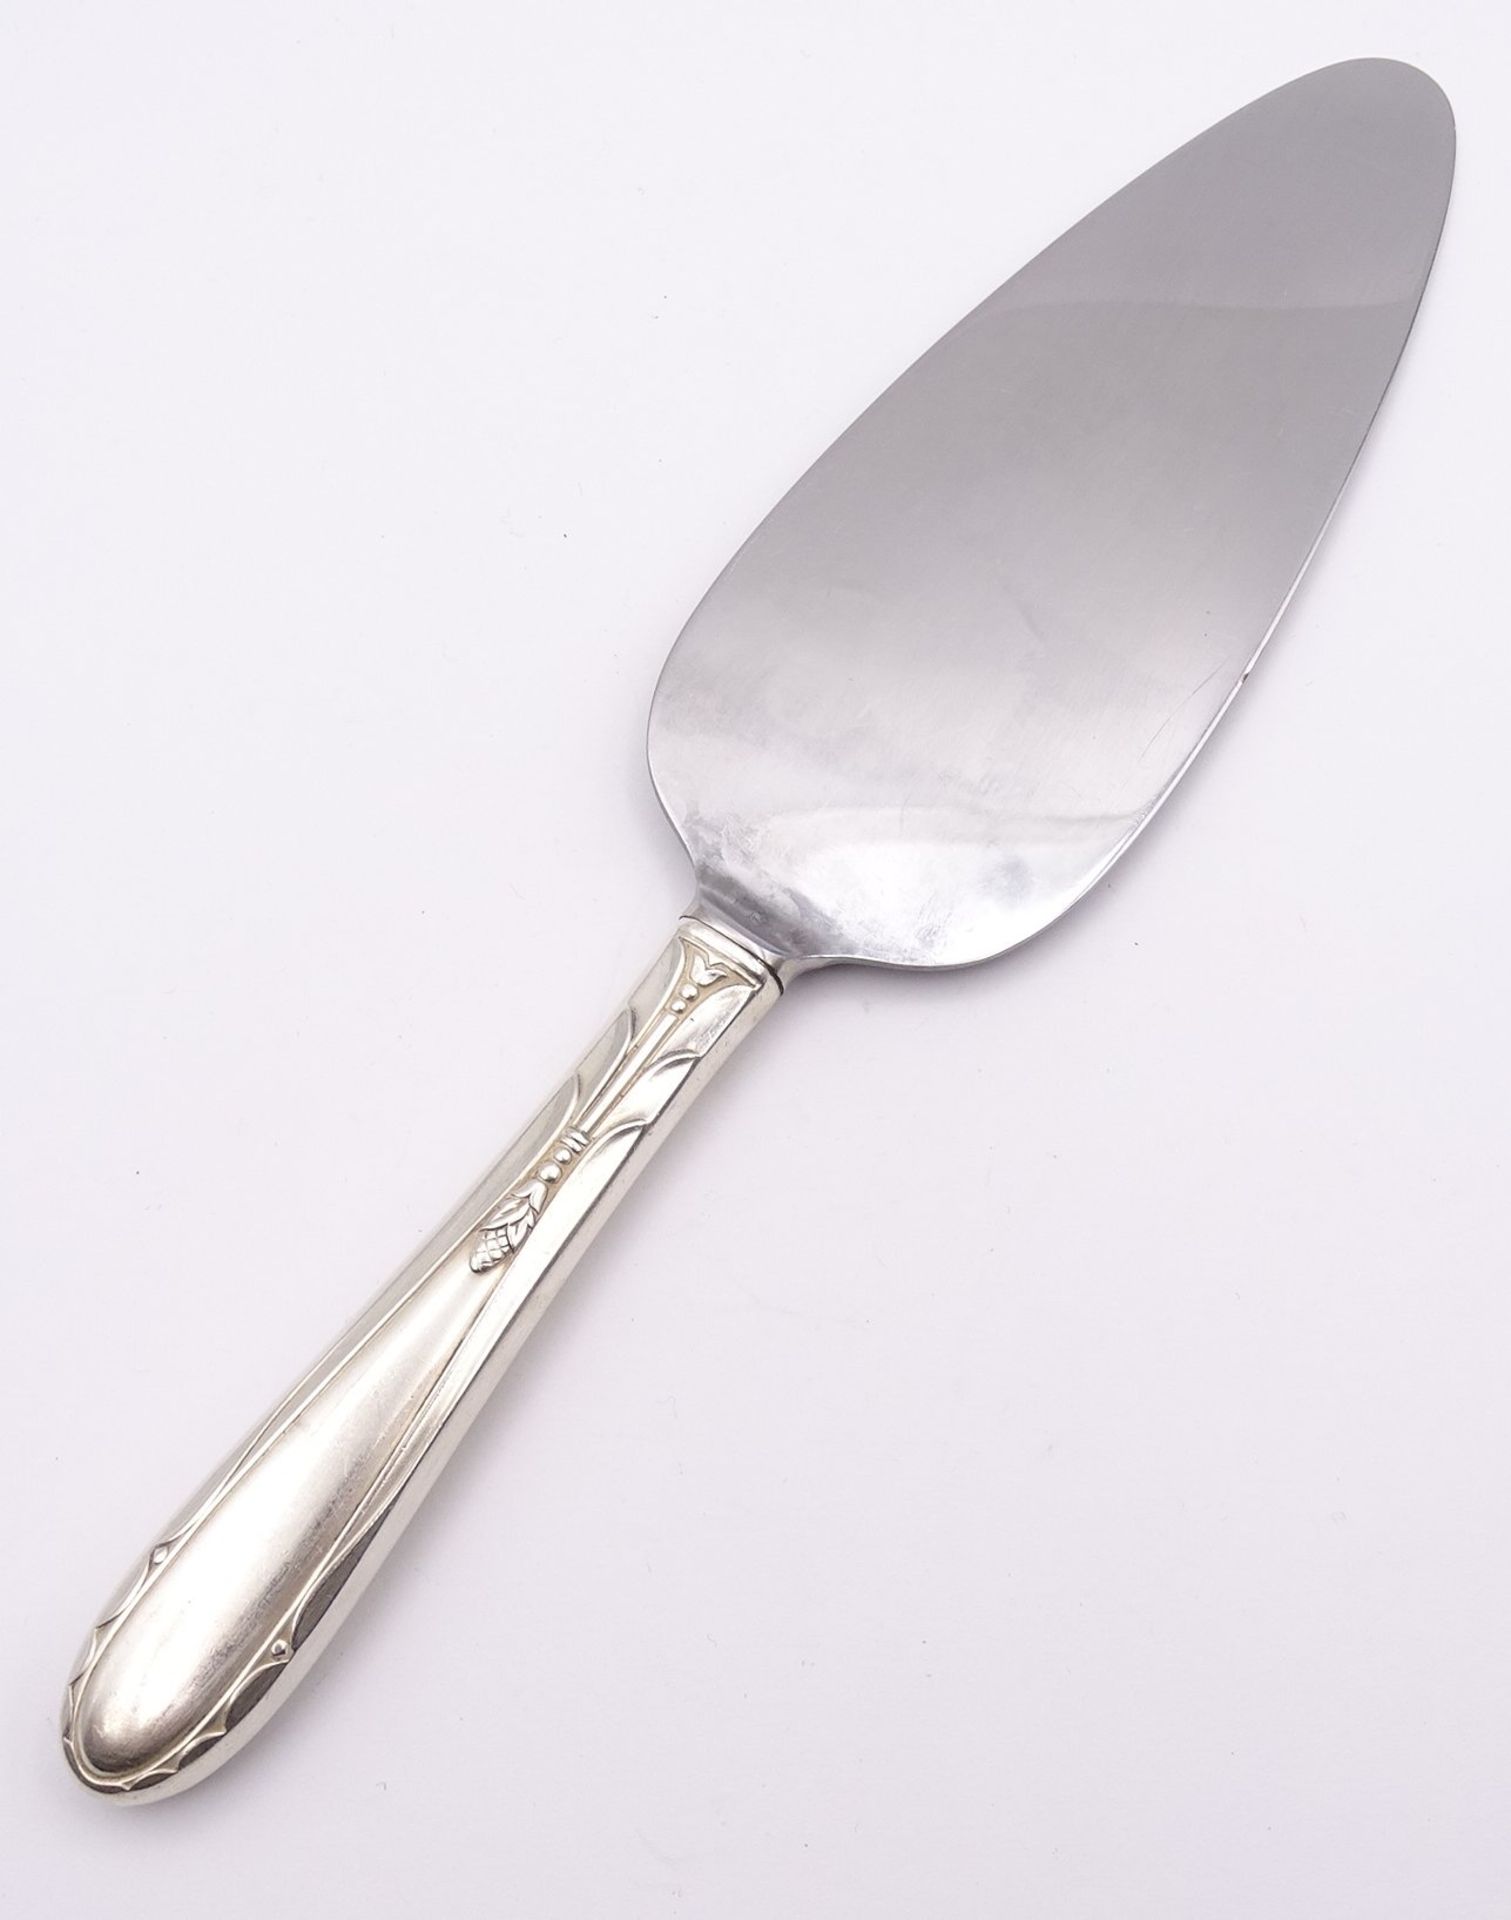 Kuchenheber mit Sterling Silber Griff, L. 25cm